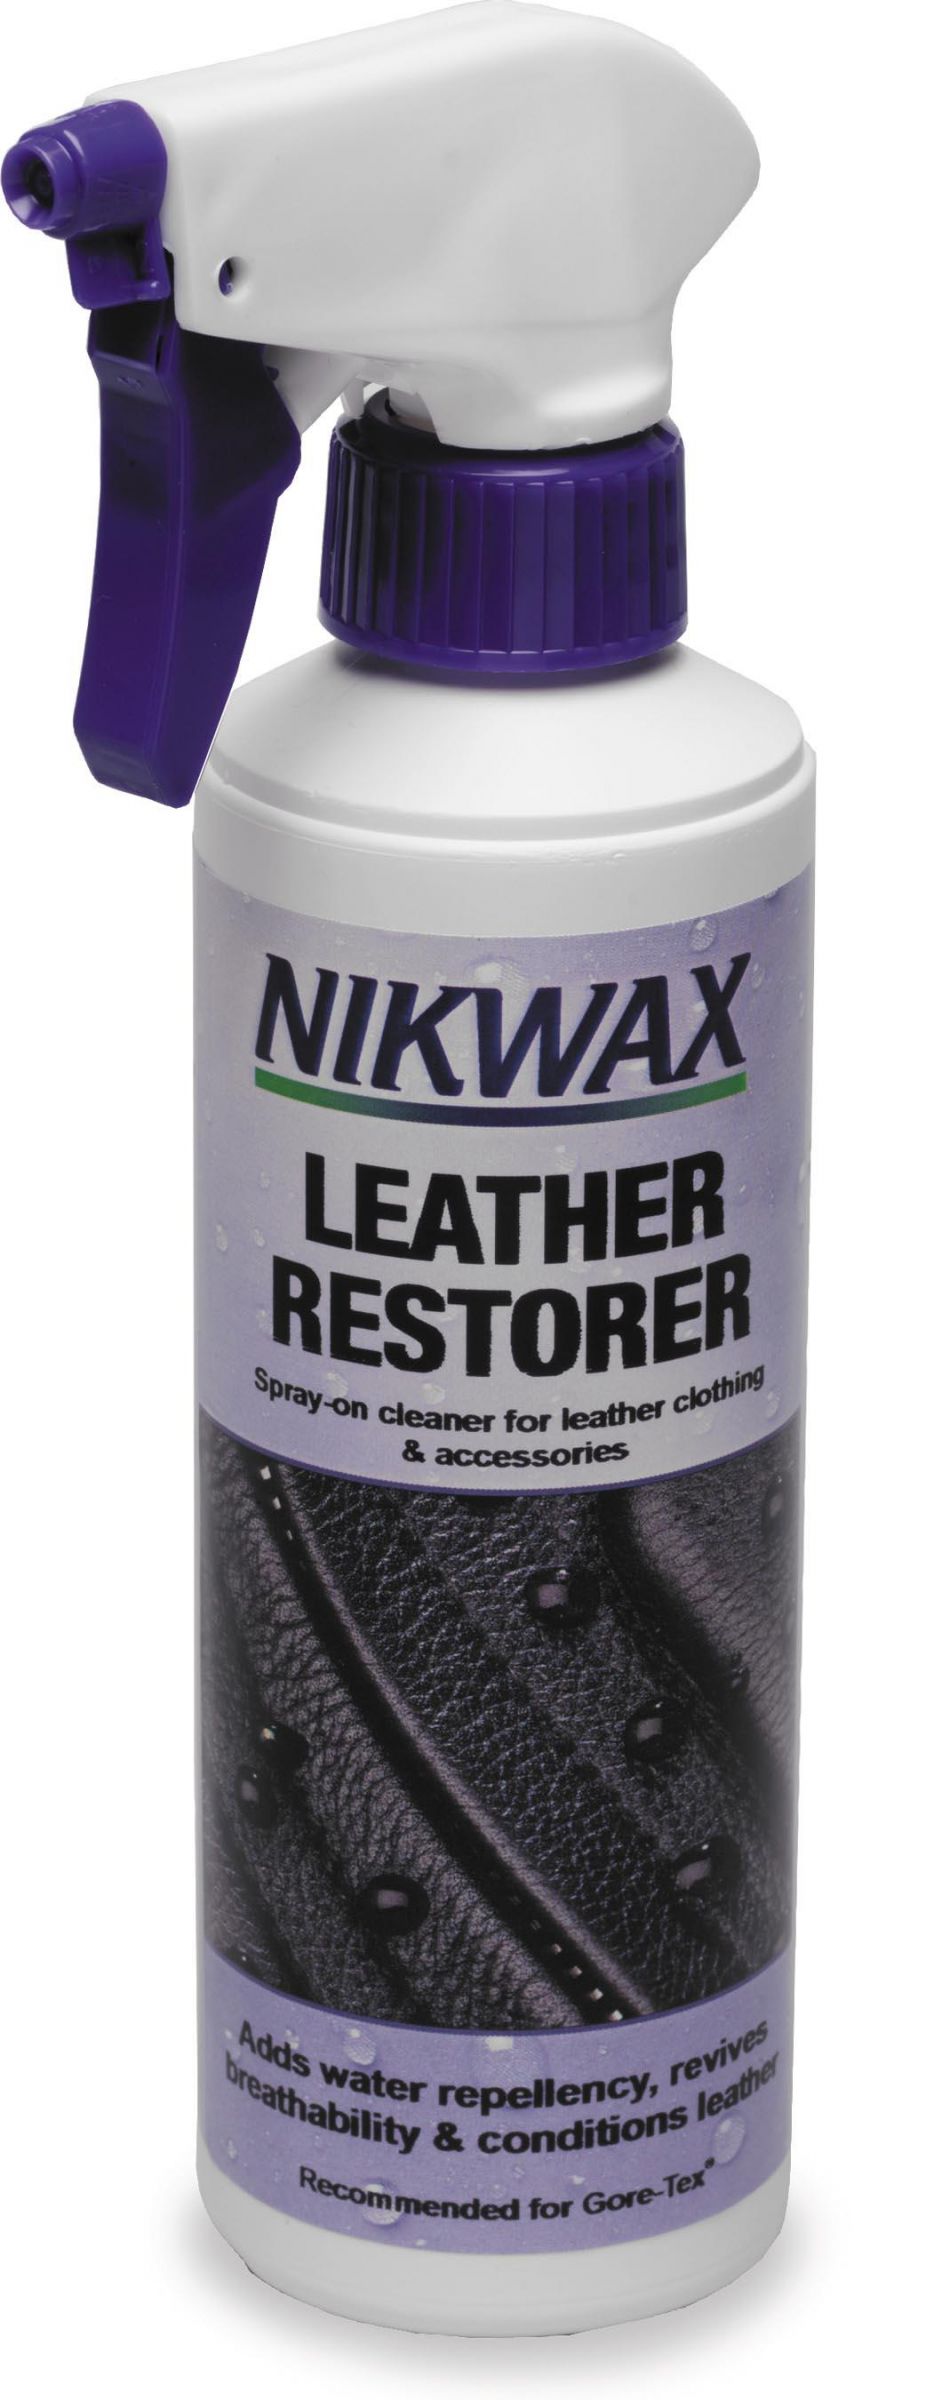 4MVF-NIKWAX-491 Leather Restorer - 10oz.